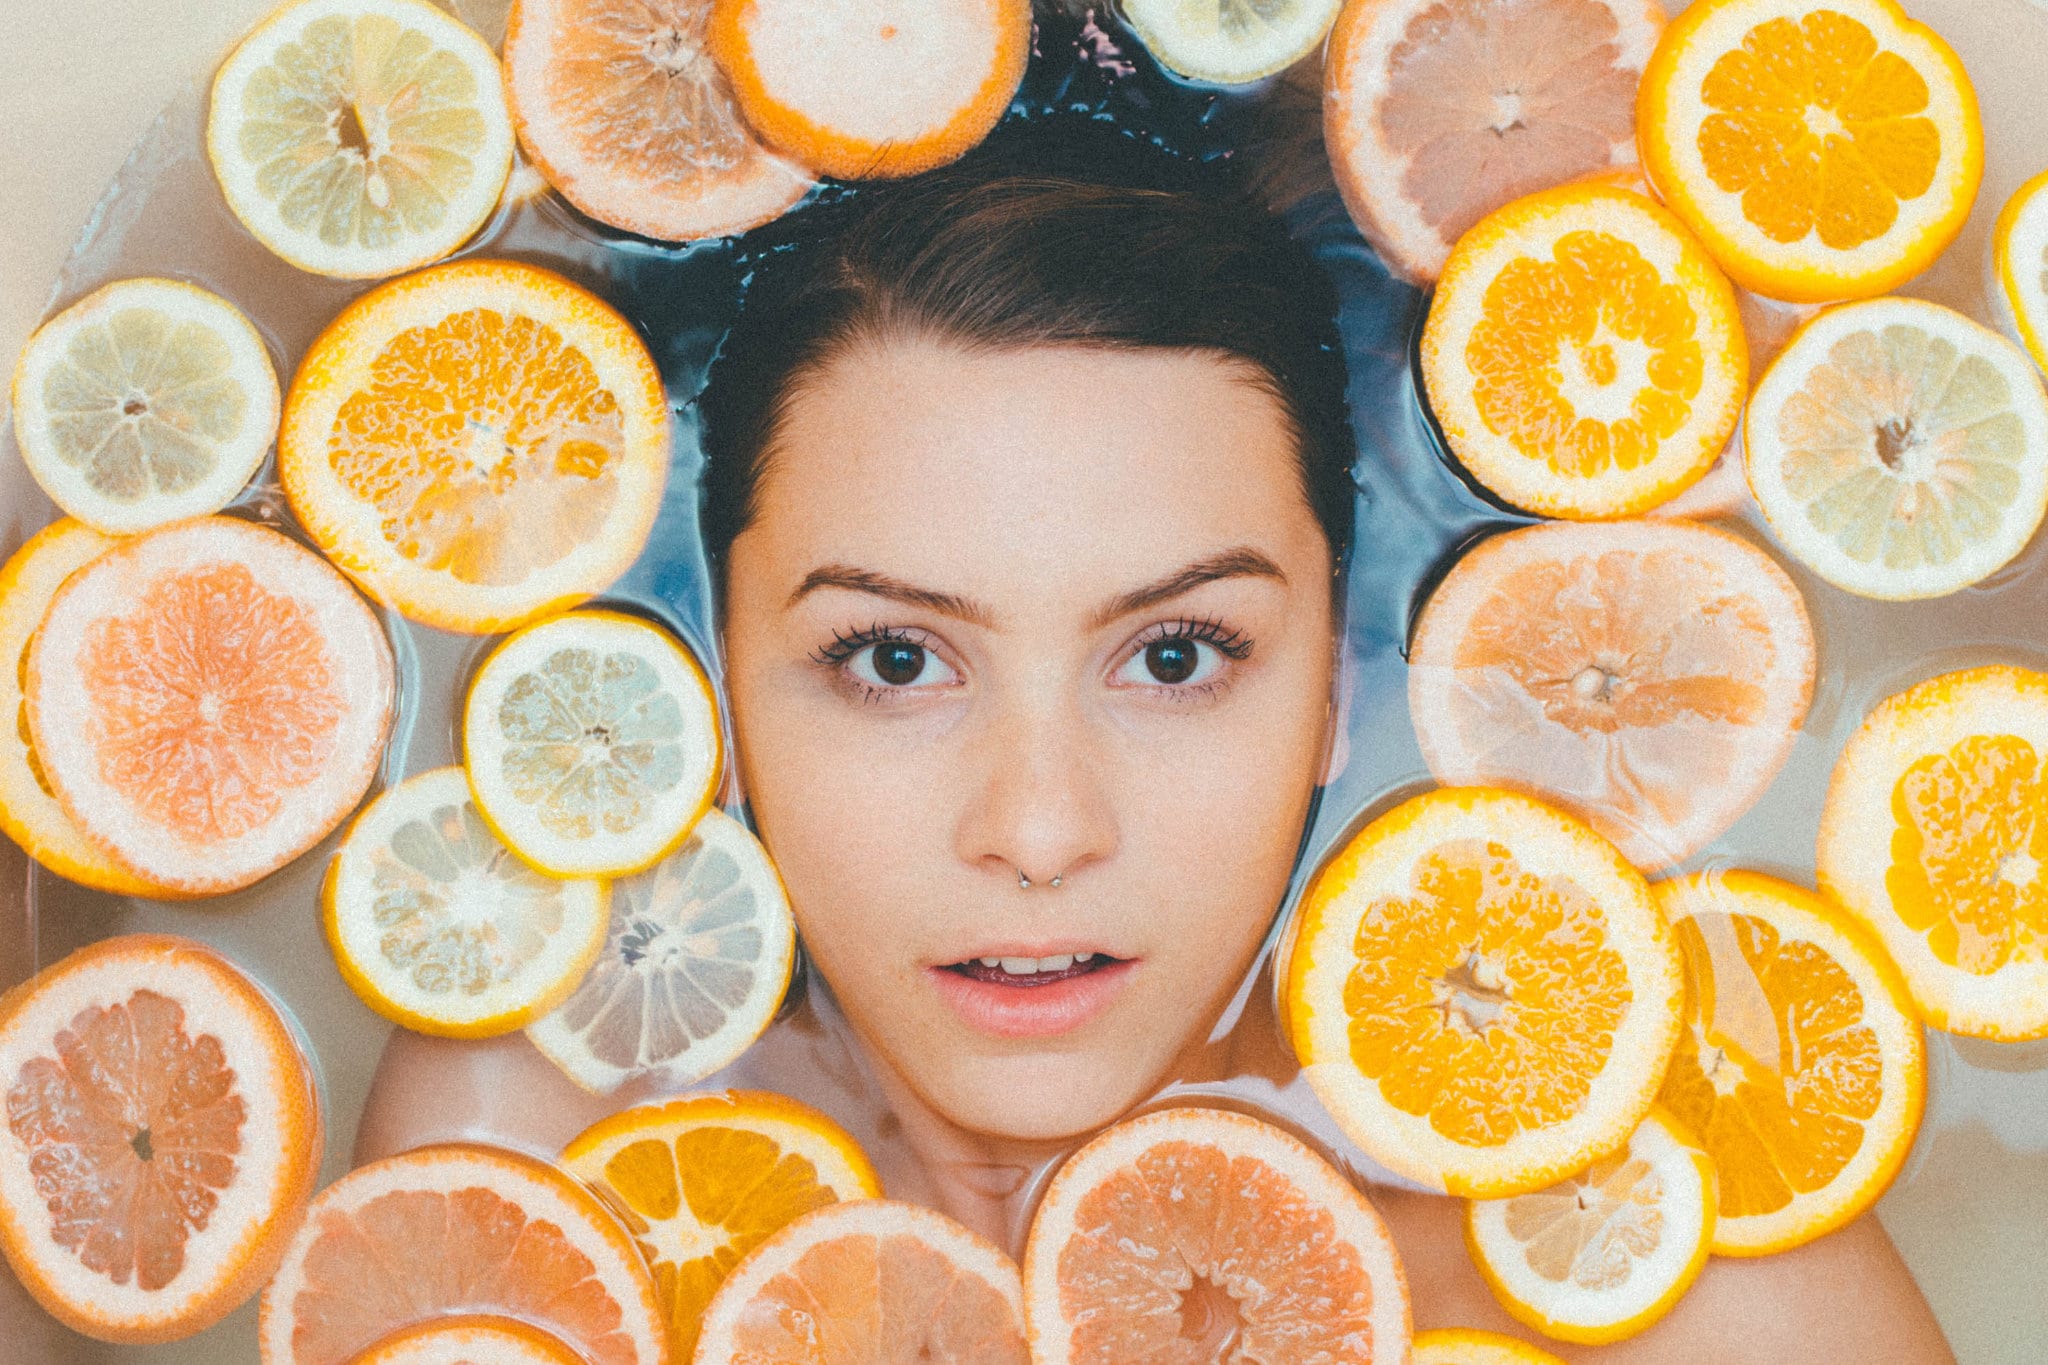 Vrouw in bad met stukjes citroen en sinaasappel